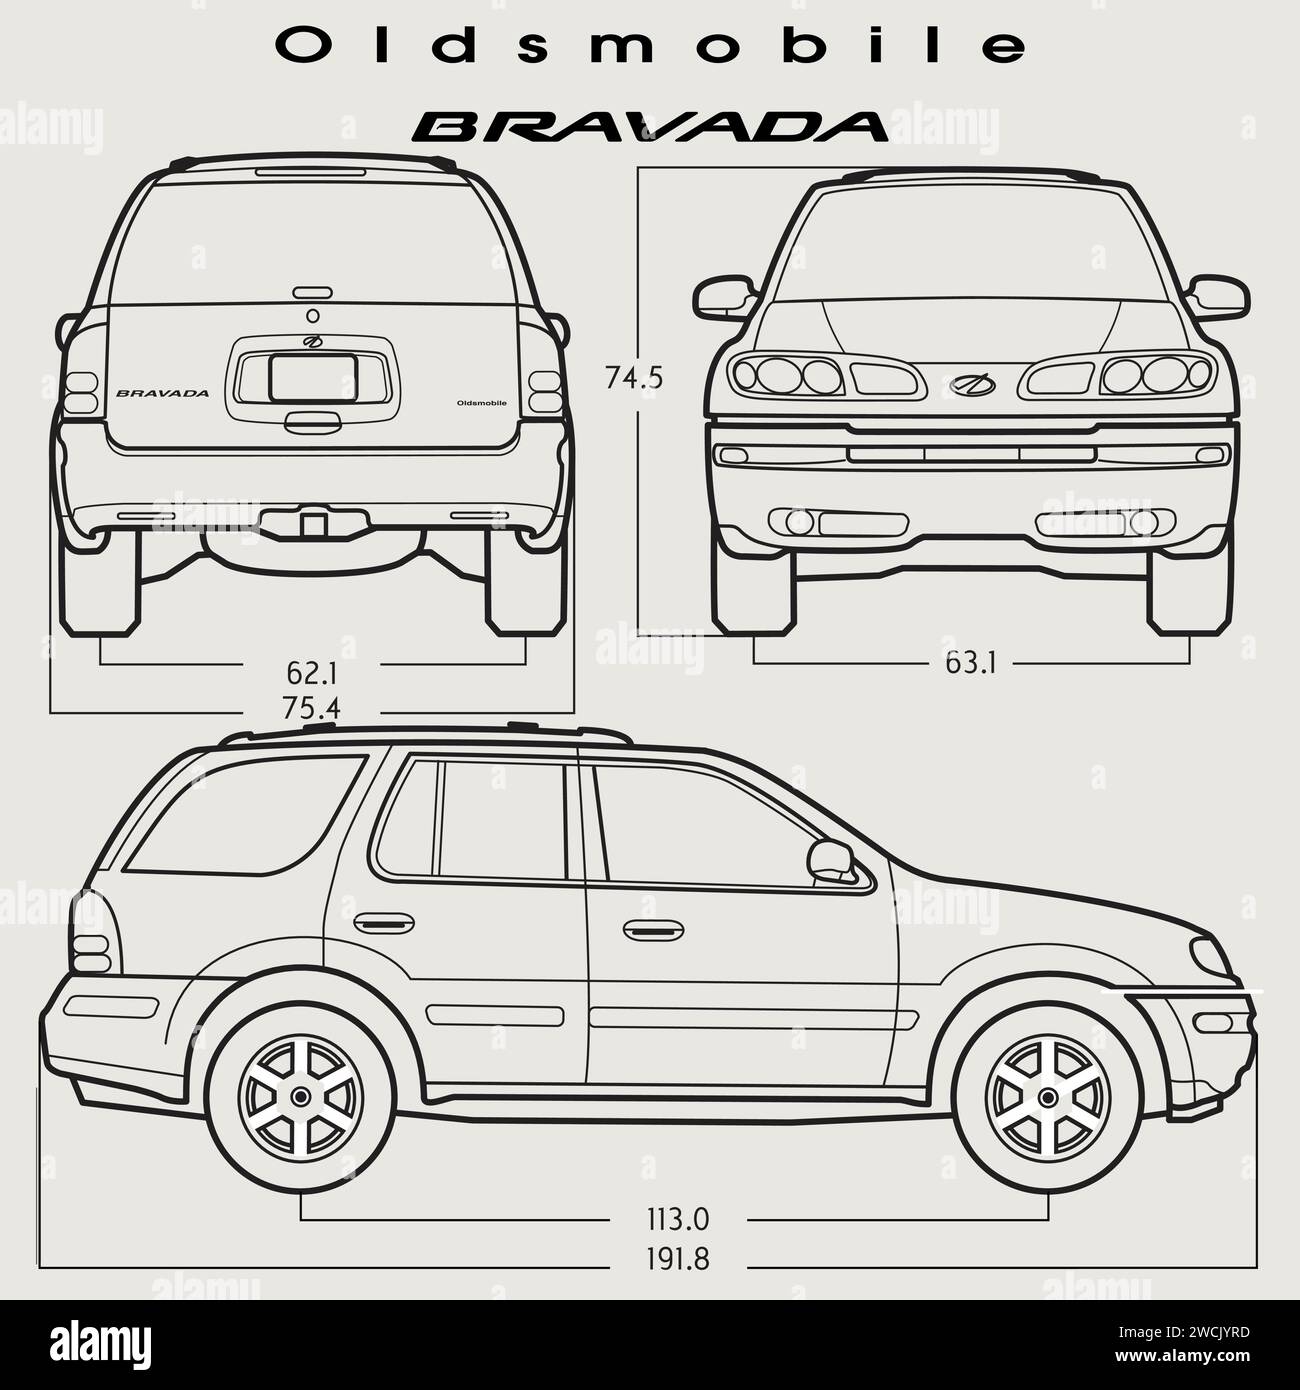 Modèle de voiture Bravada 2002 d'Oldsmobile Illustration de Vecteur